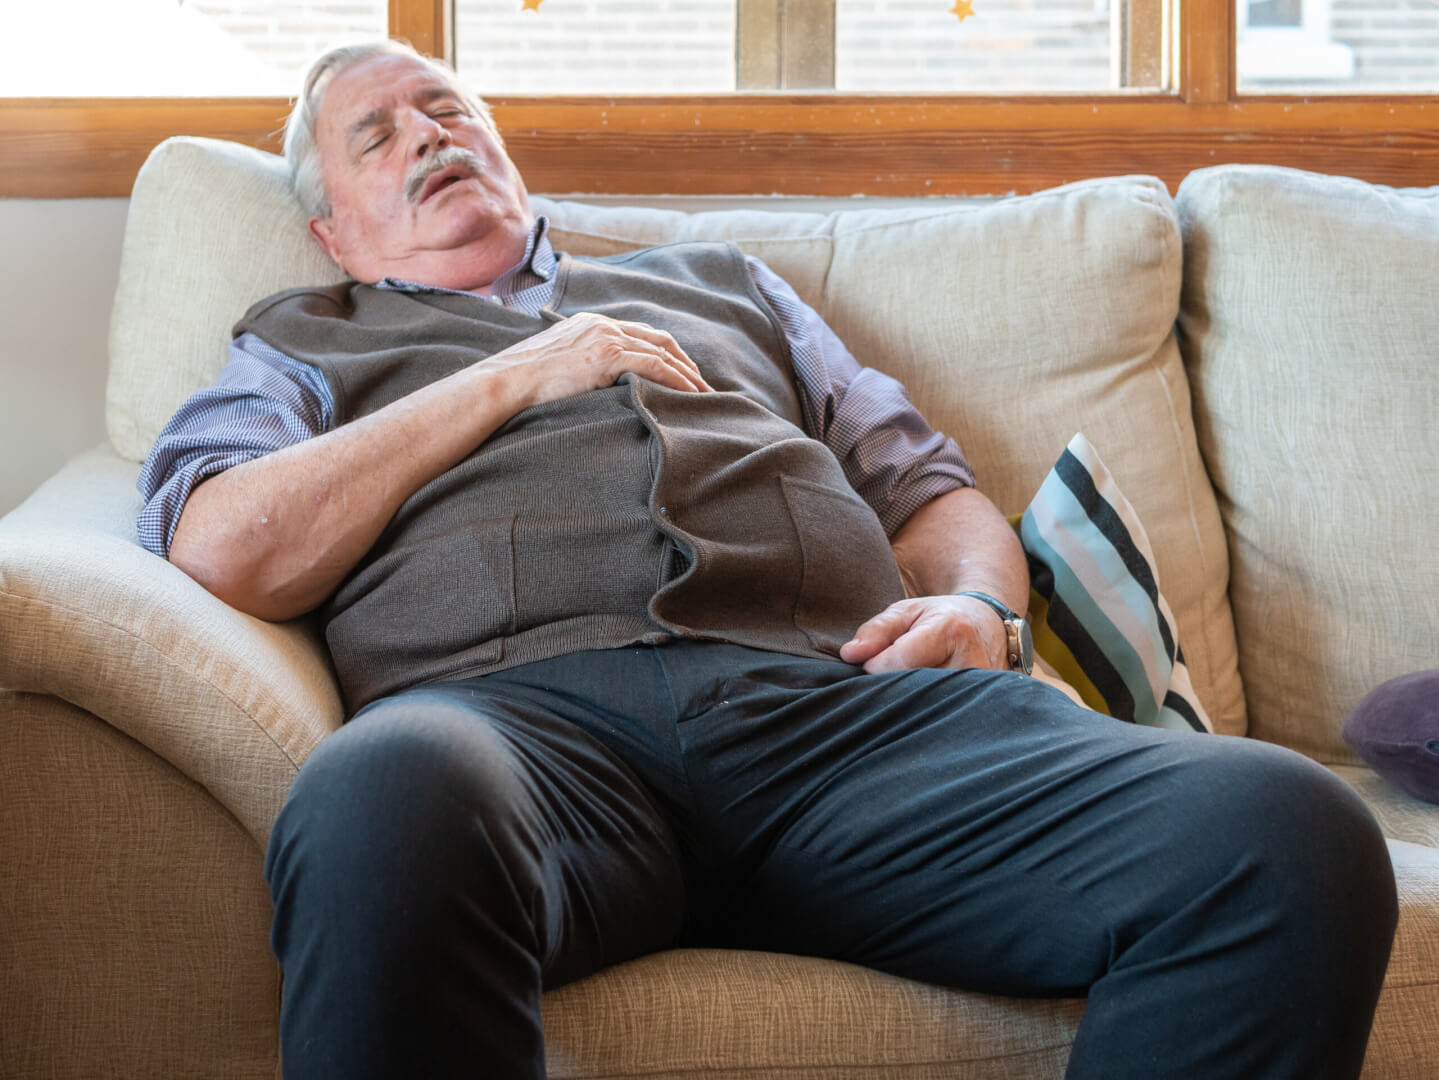 Un señor mayor se encuentra durmiendo en el sofá de su casa en pleno día.